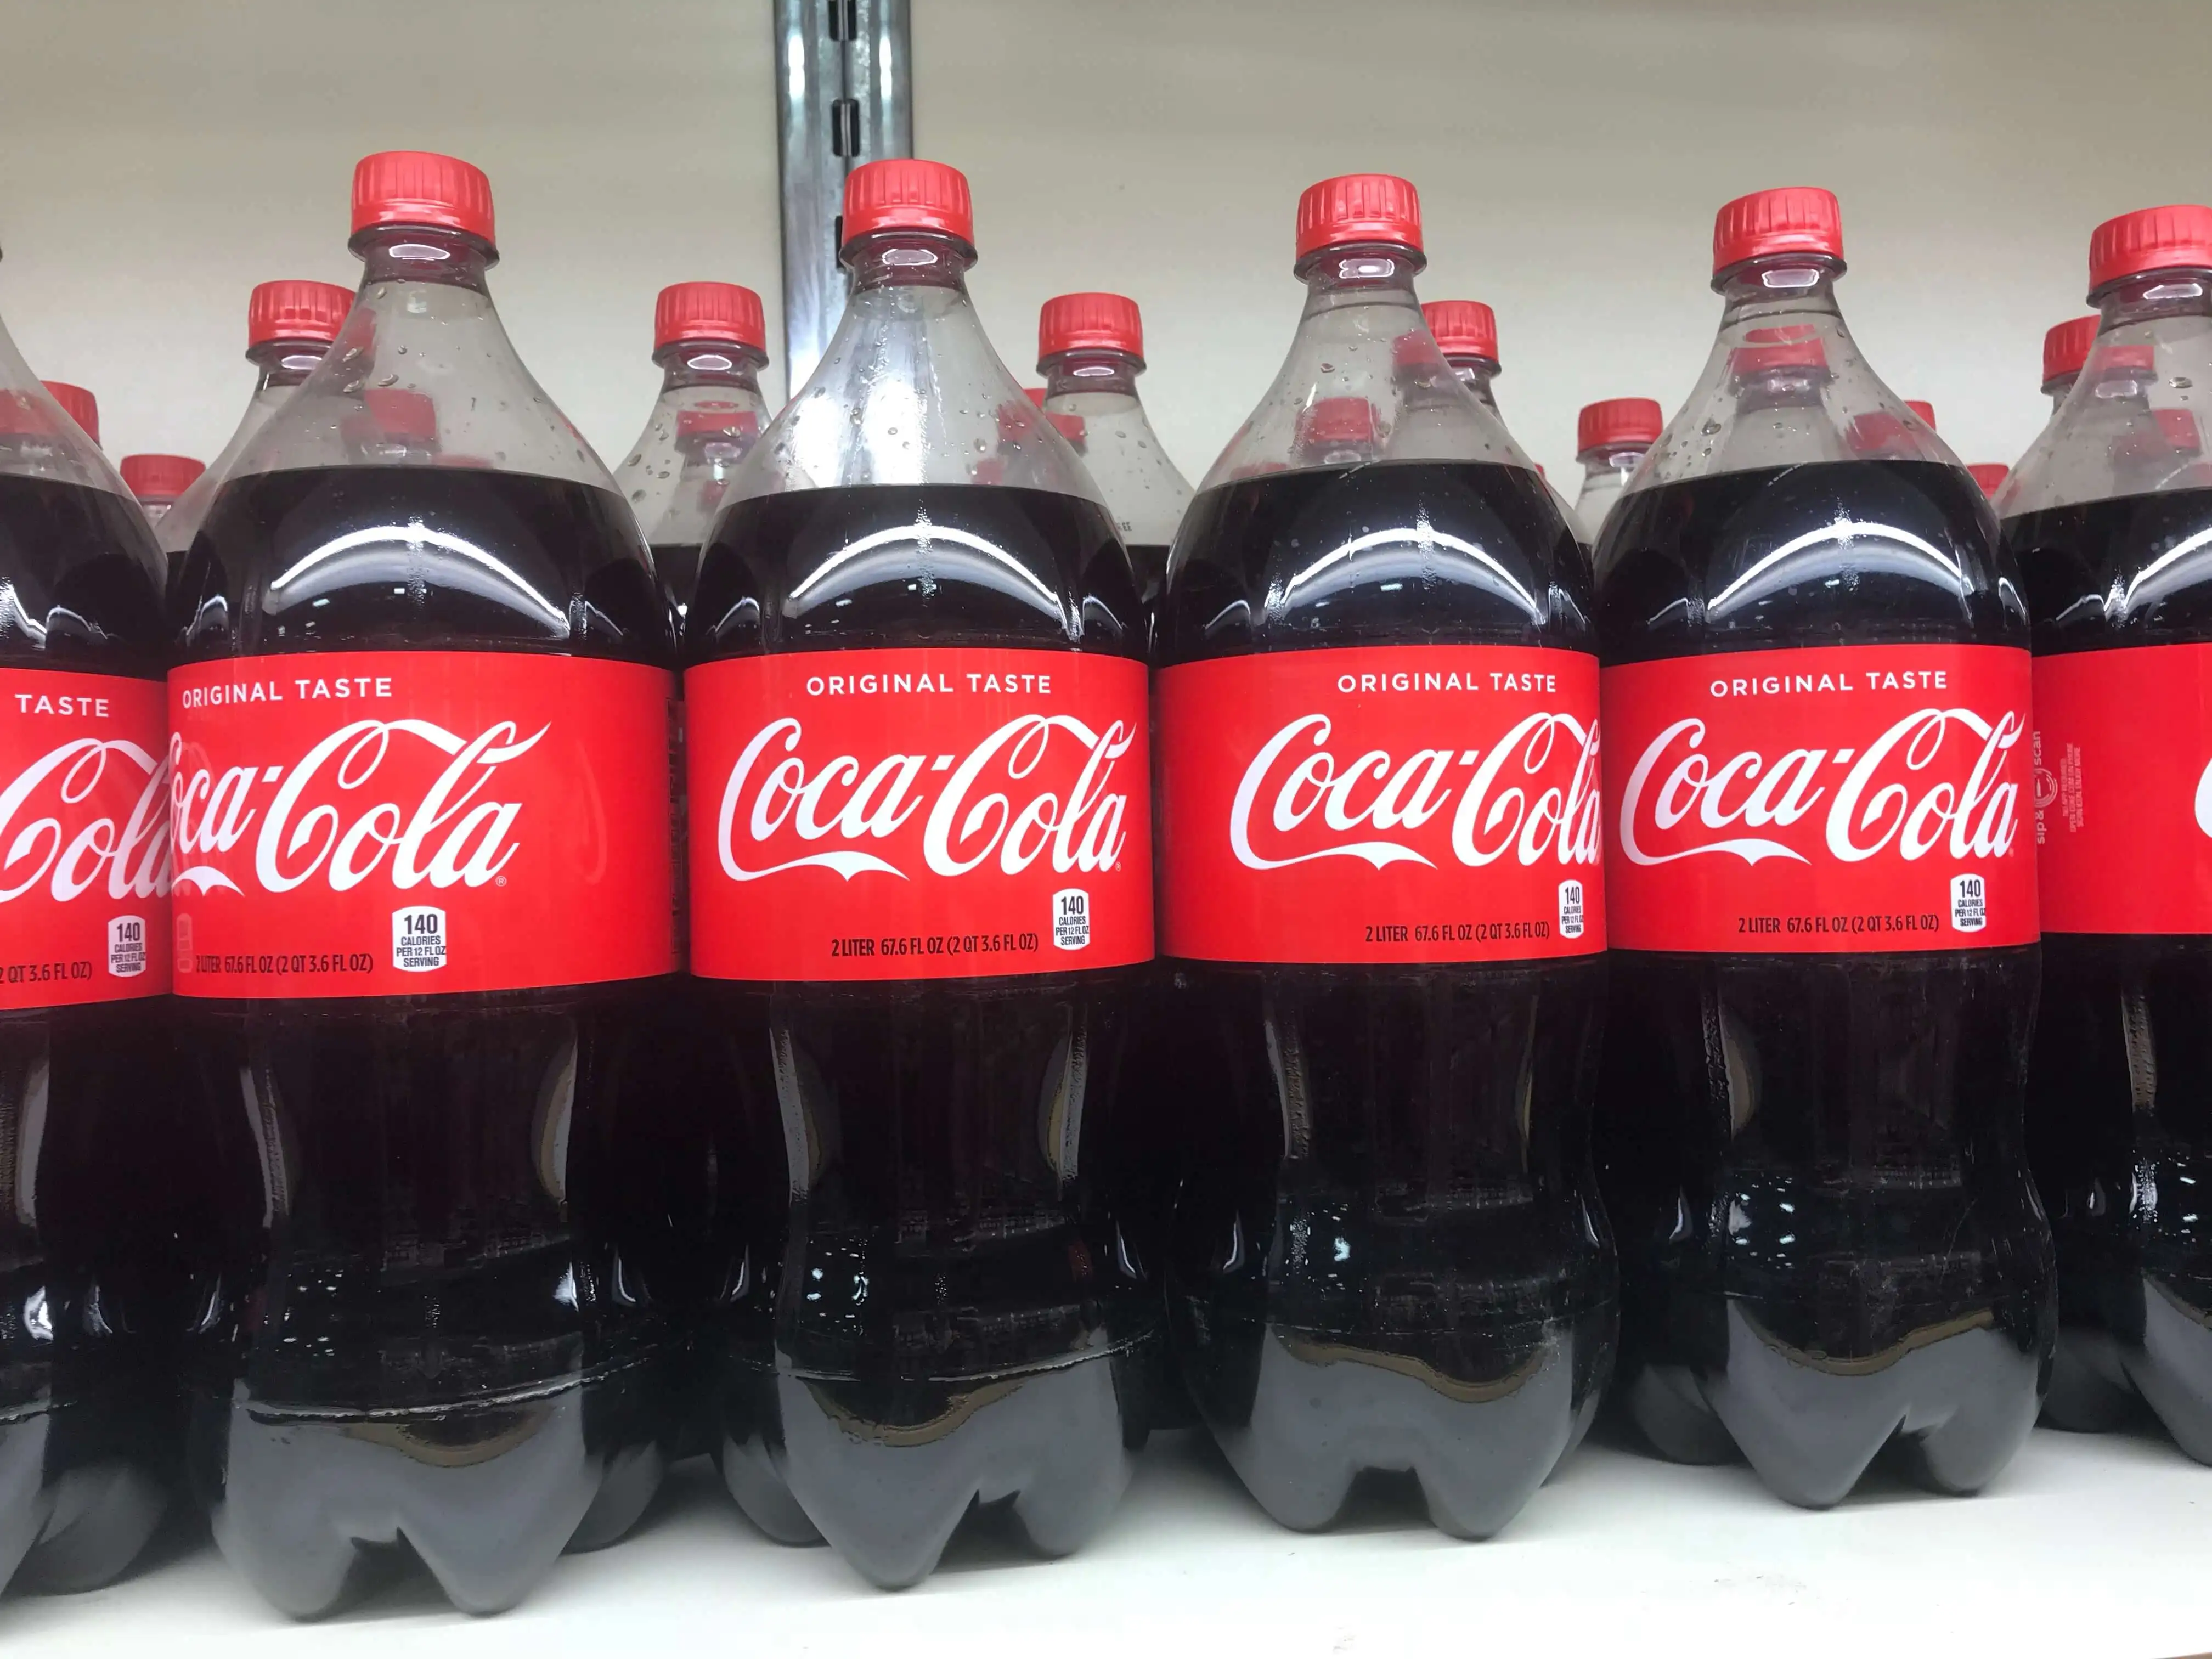 Где Купить Кока Колу В Новосибирске